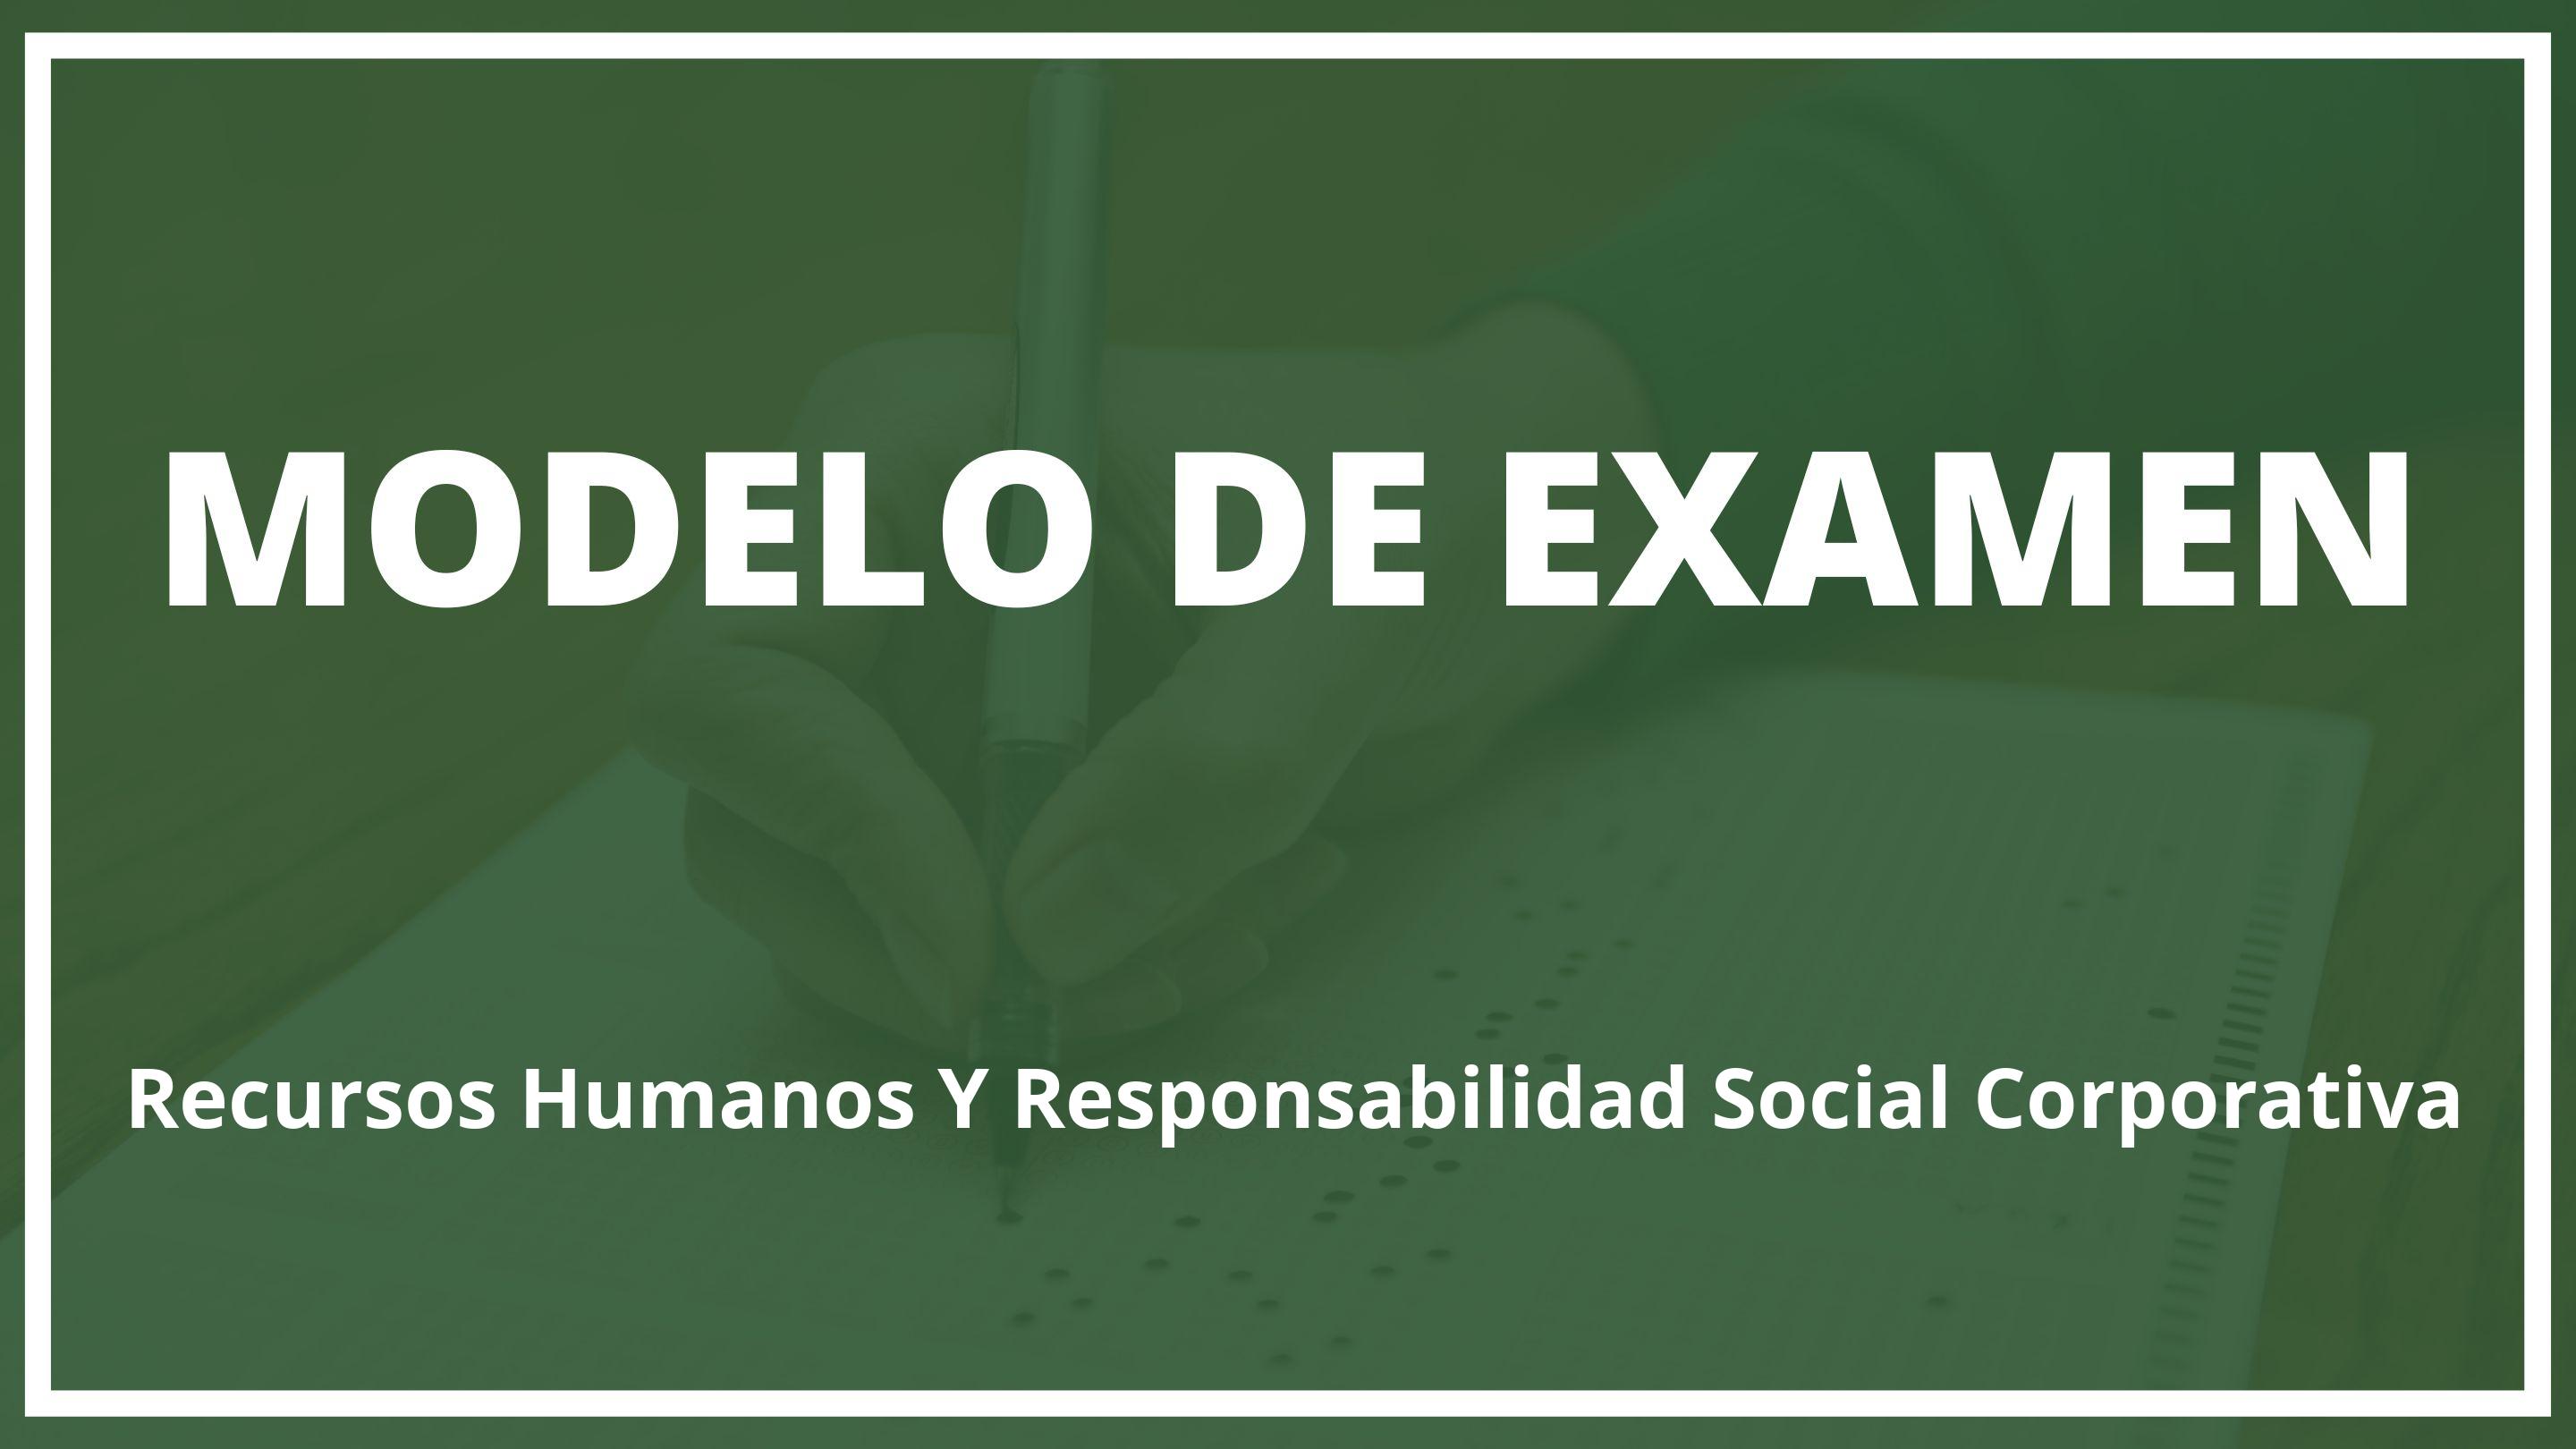 Examen Recursos Humanos Y Responsabilidad Social Corporativa